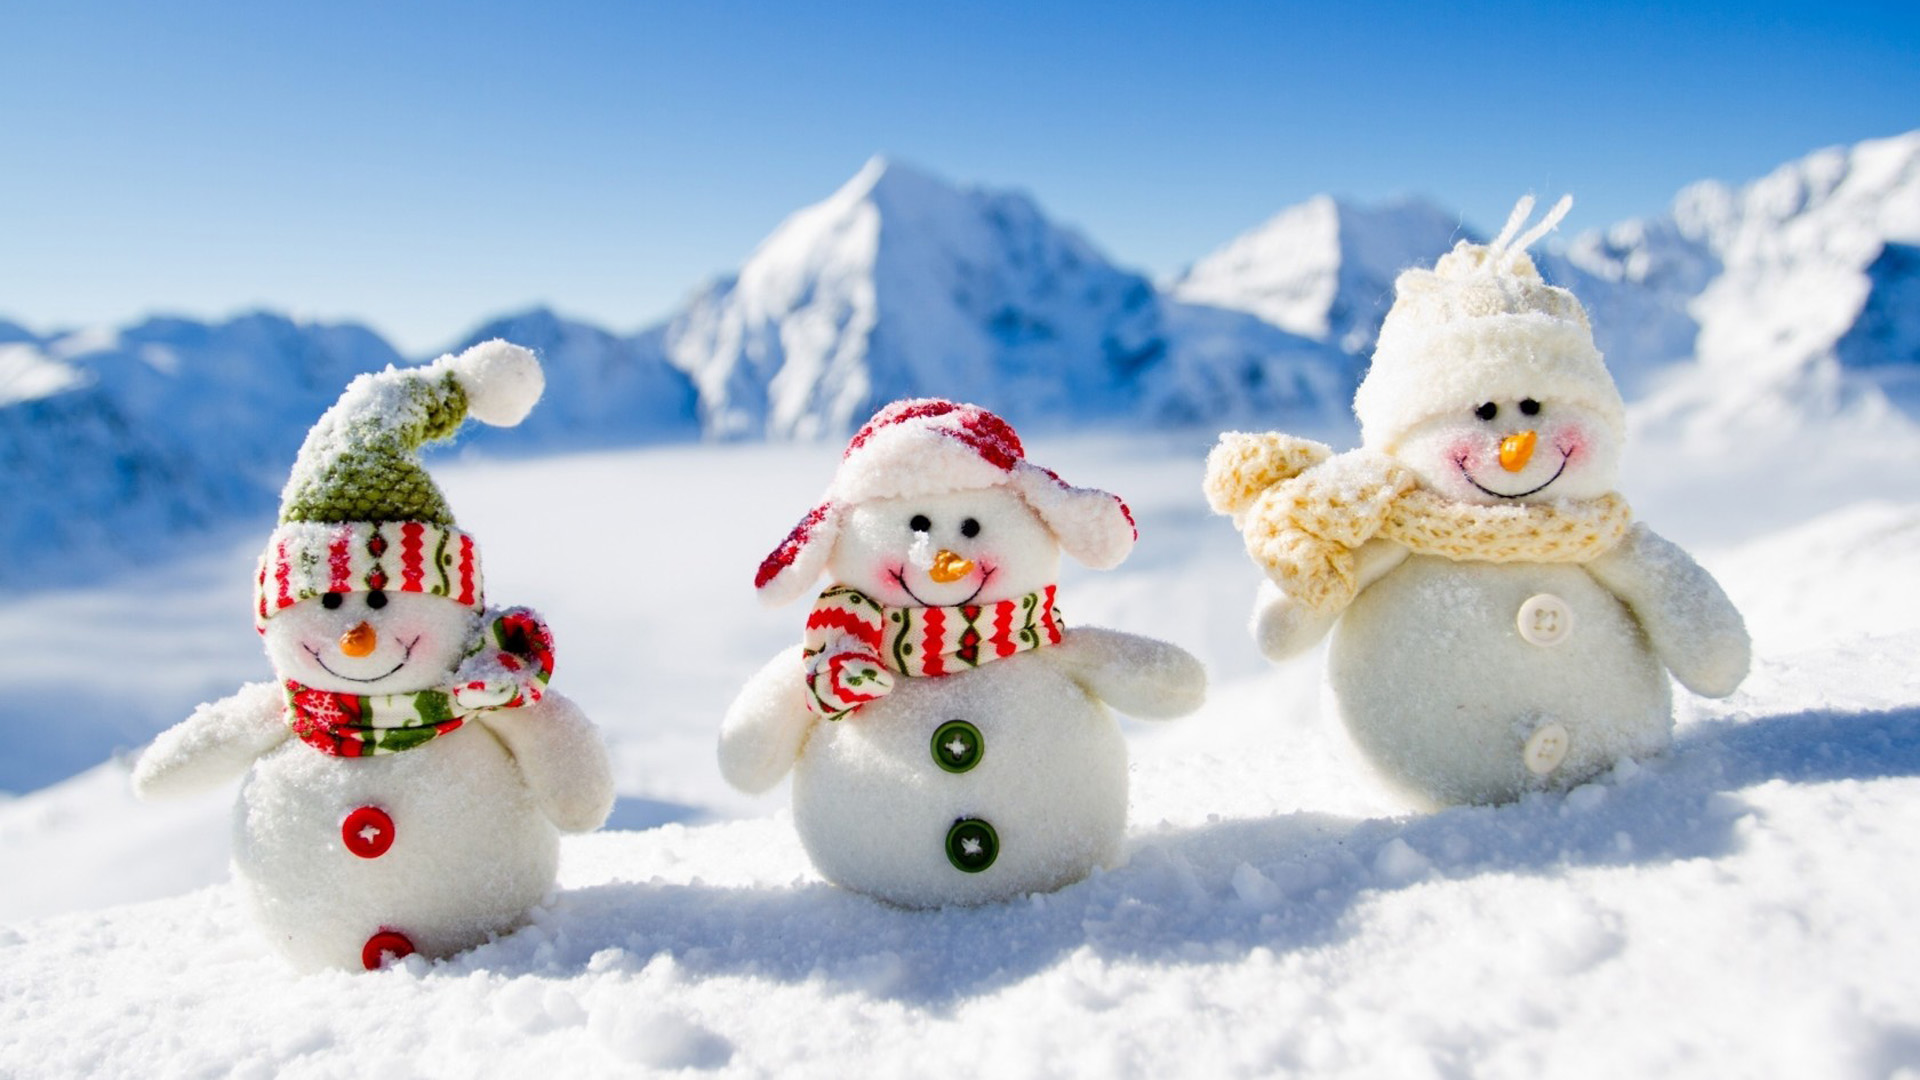 山,冬季,积雪,小雪人,新年,圣诞节桌面壁纸